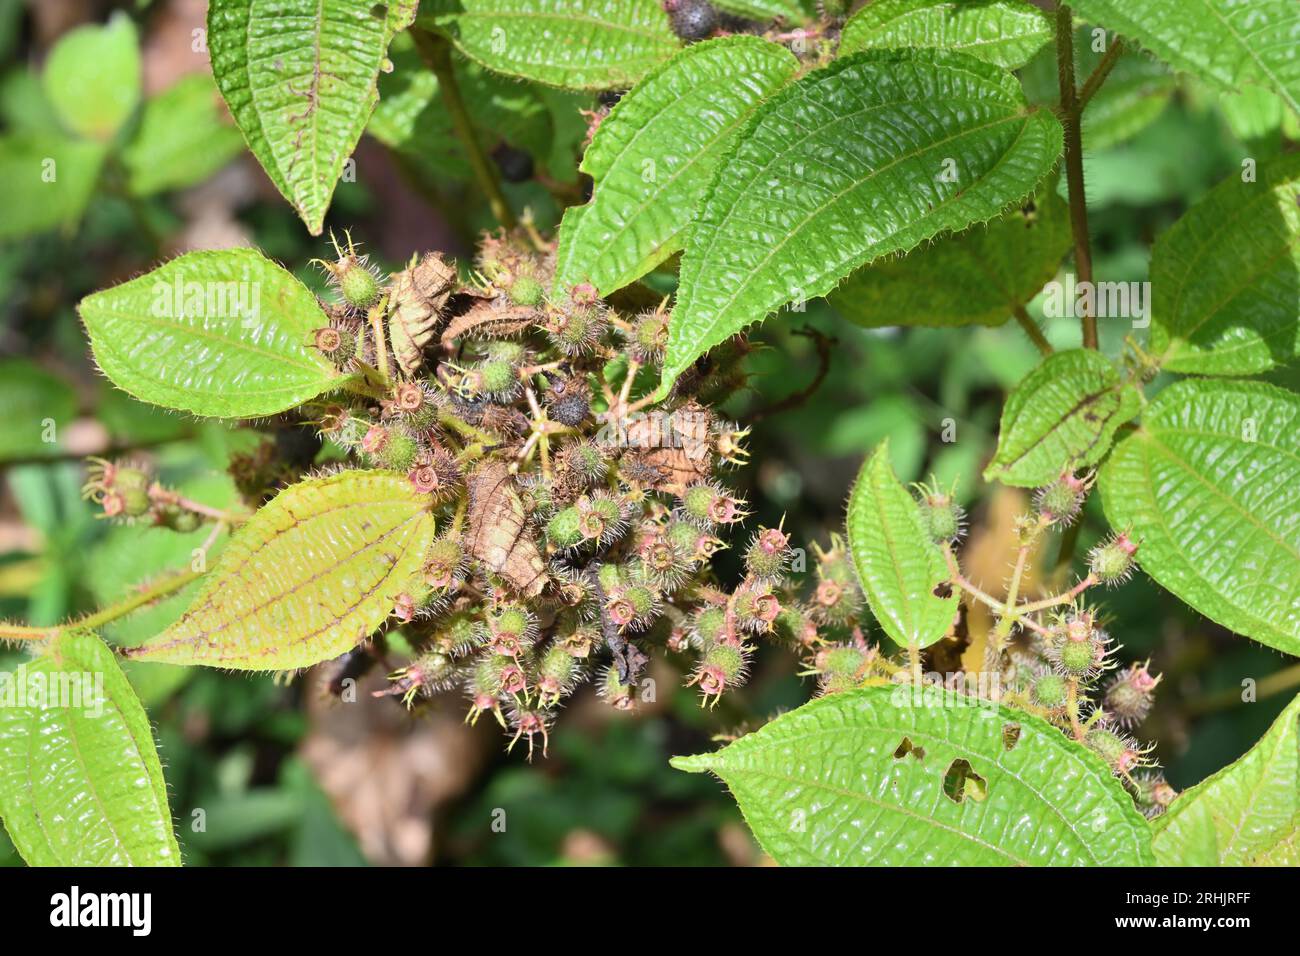 Grüne Haarfrucht einer Soapbush (Miconia crenata) Unkrautpflanze, Blick von oben Stockfoto